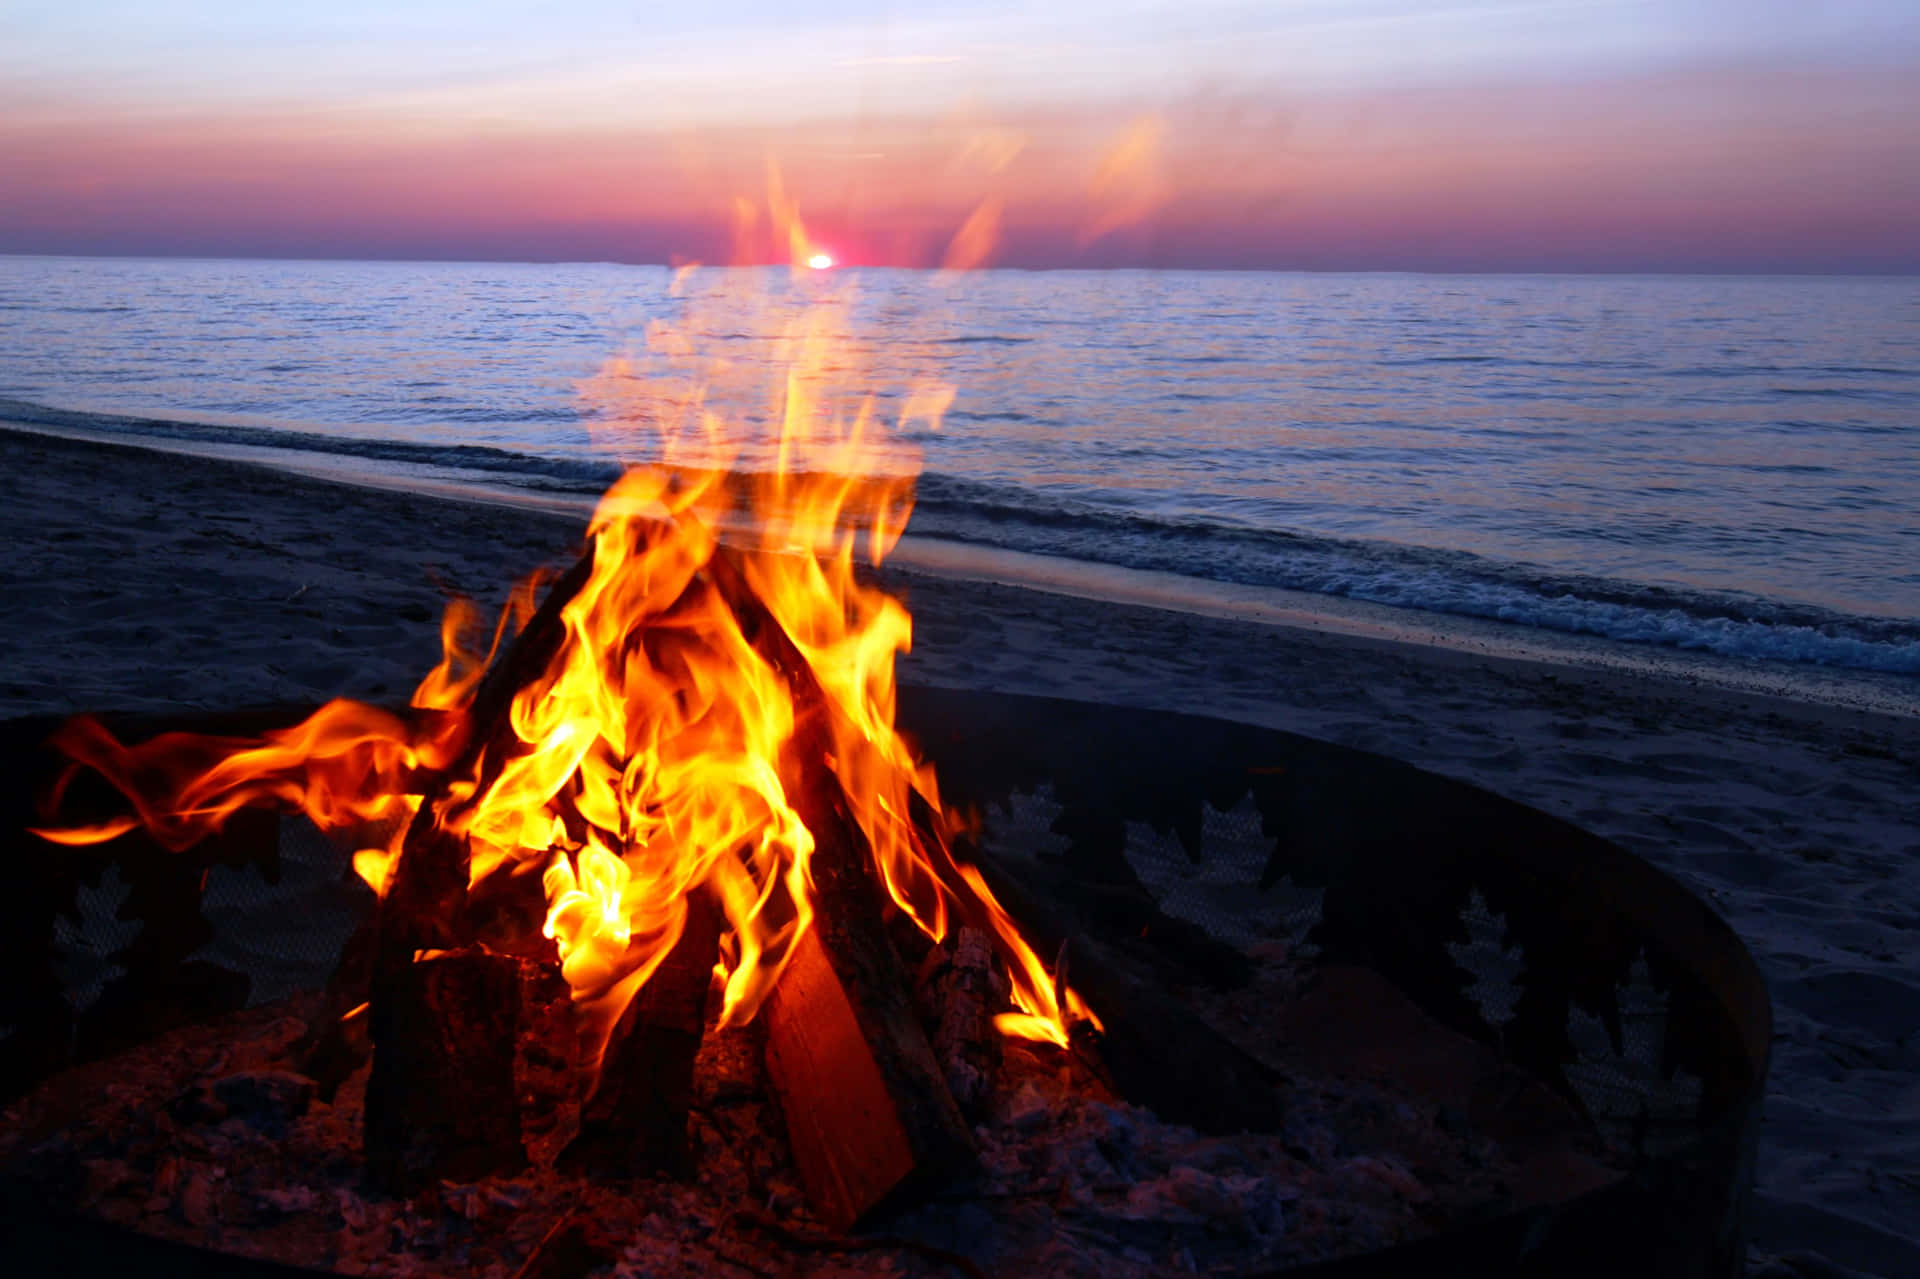 Beach Campfire Under A Starry Night Sky Wallpaper